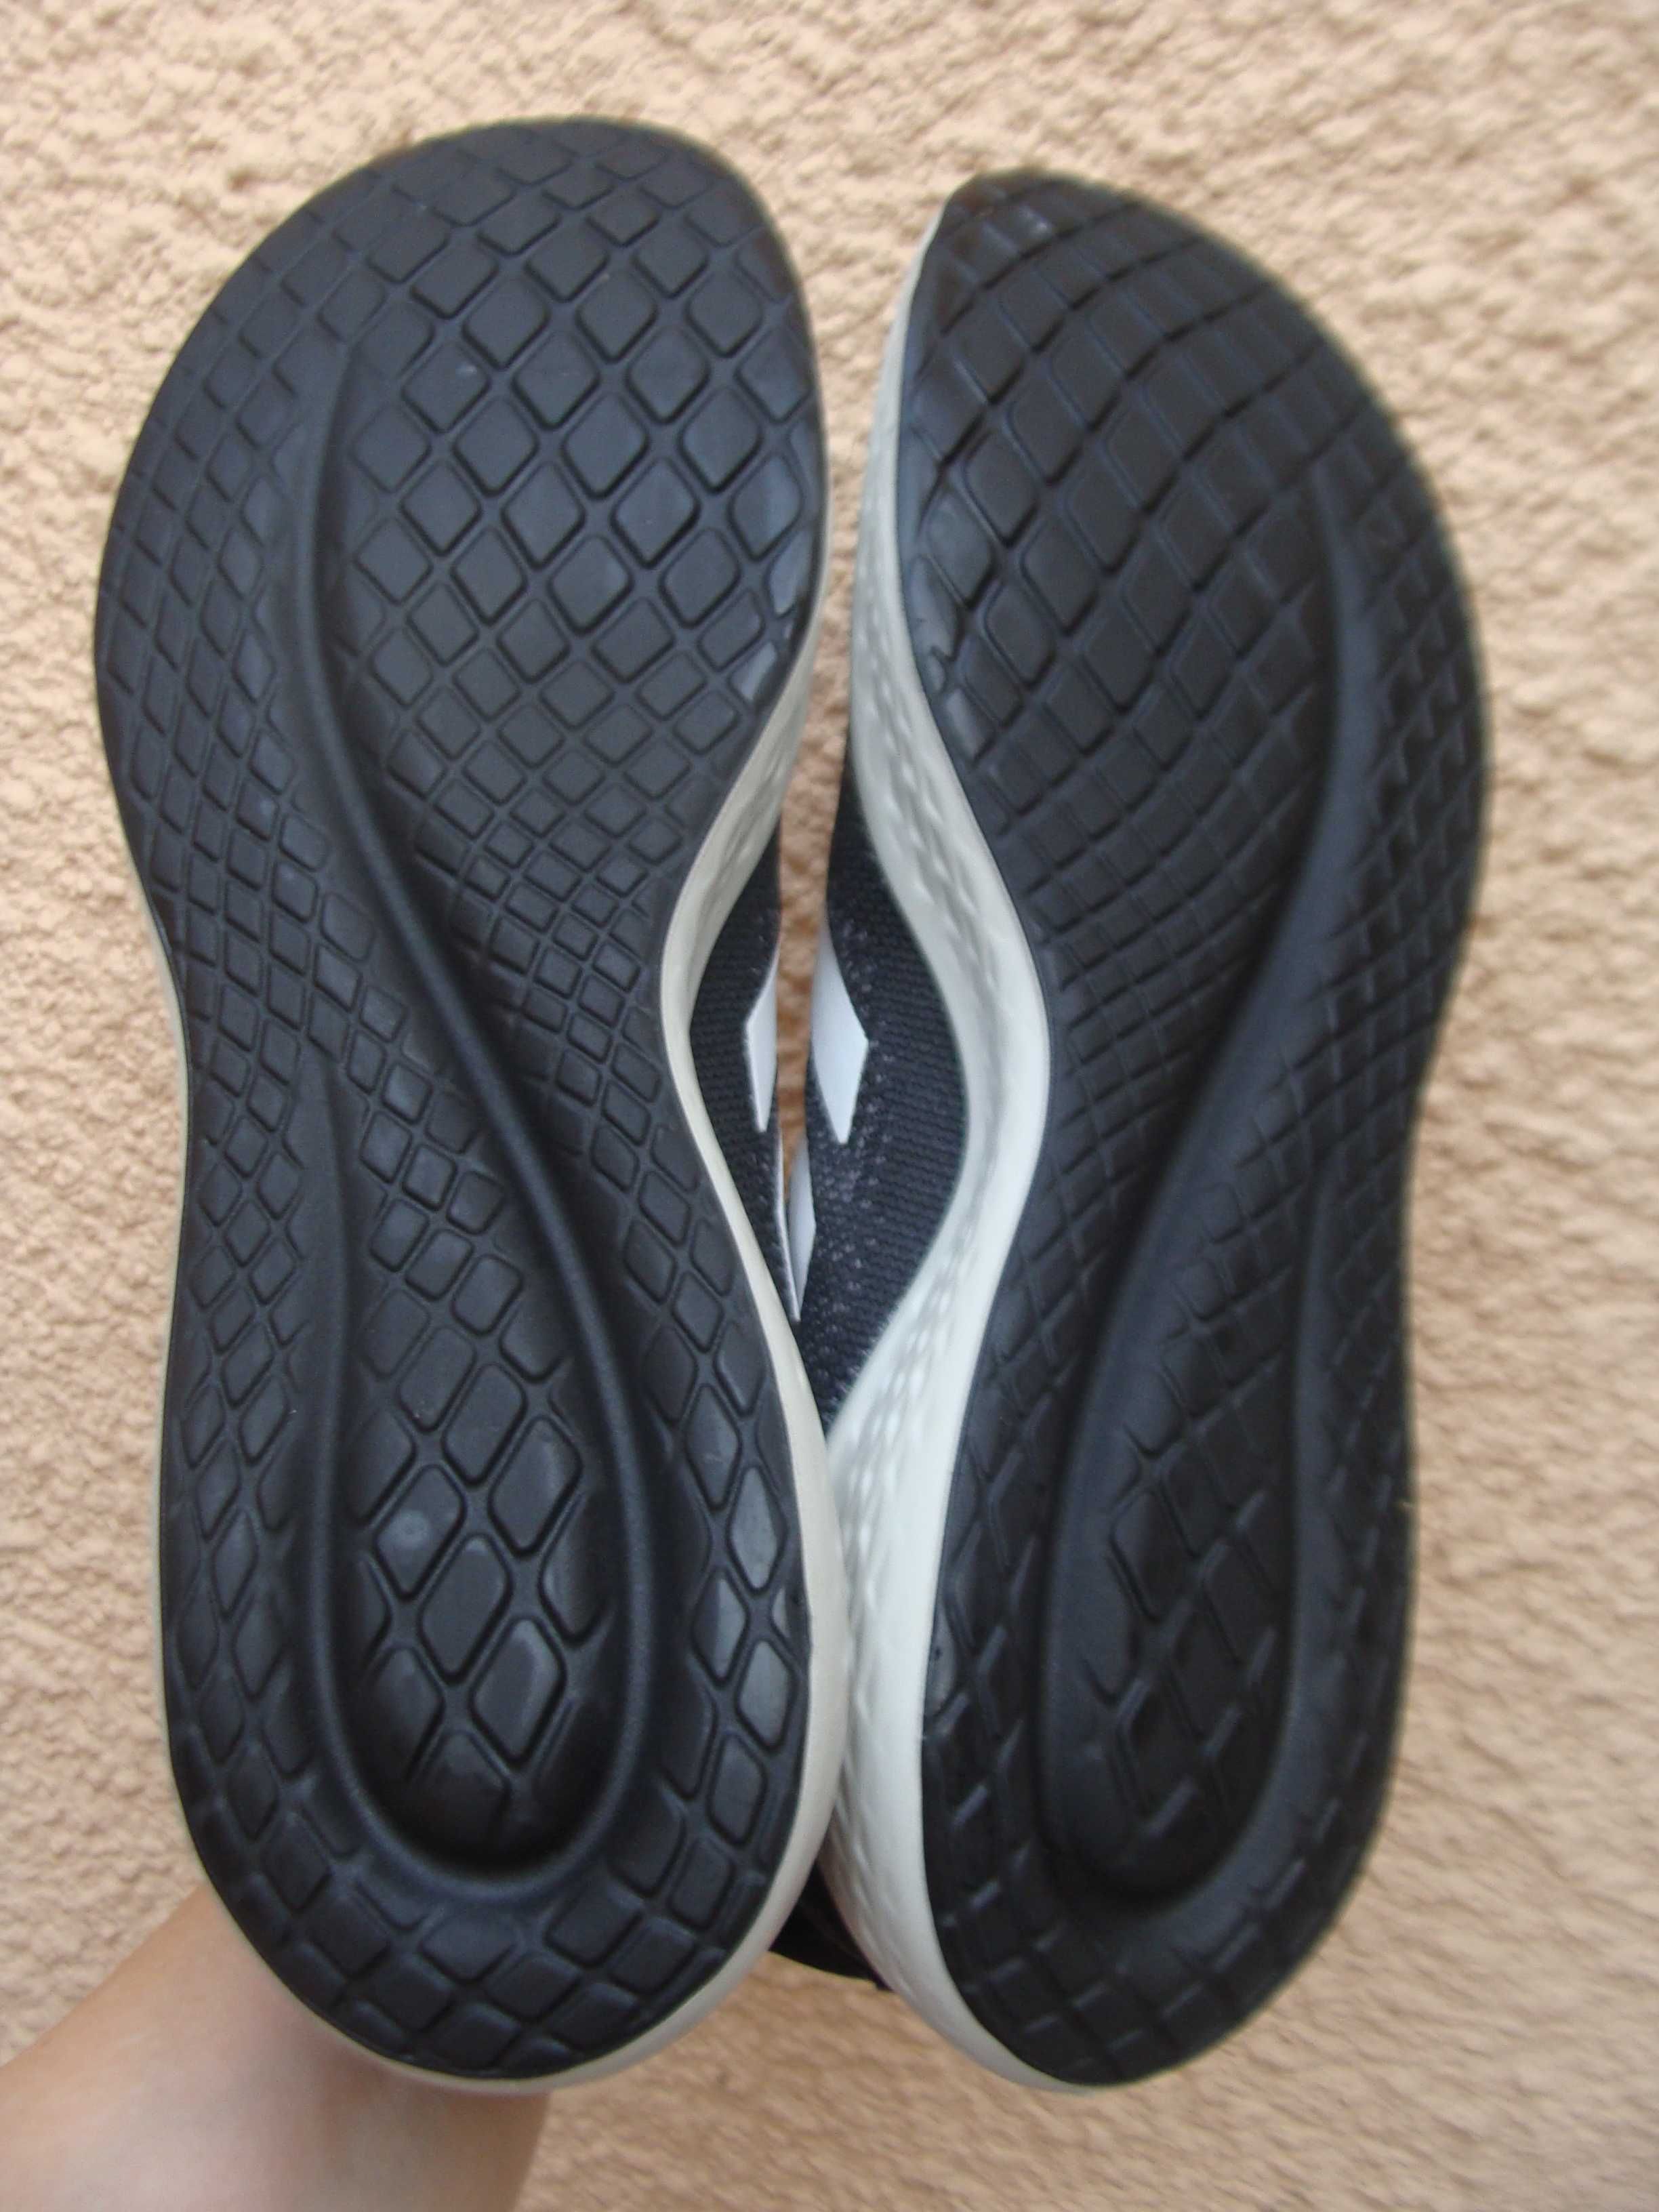 46/29.5 см Adidas  крутые кроссовки оригинал новое состояние